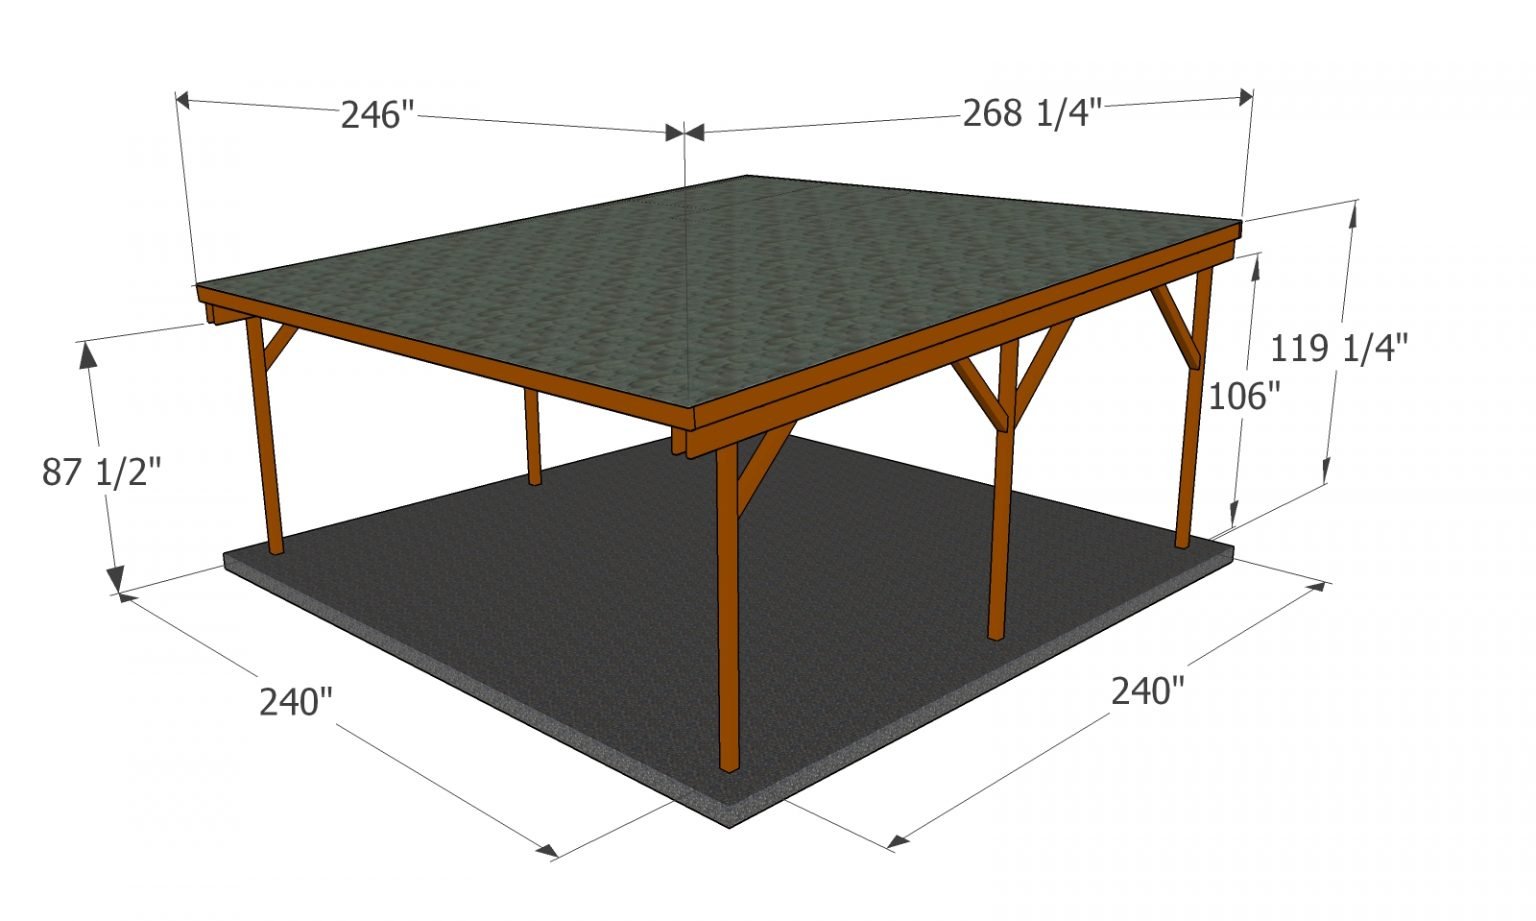 Flat roof double carport plans - Flat Roof Carport Plans 2 1536x921